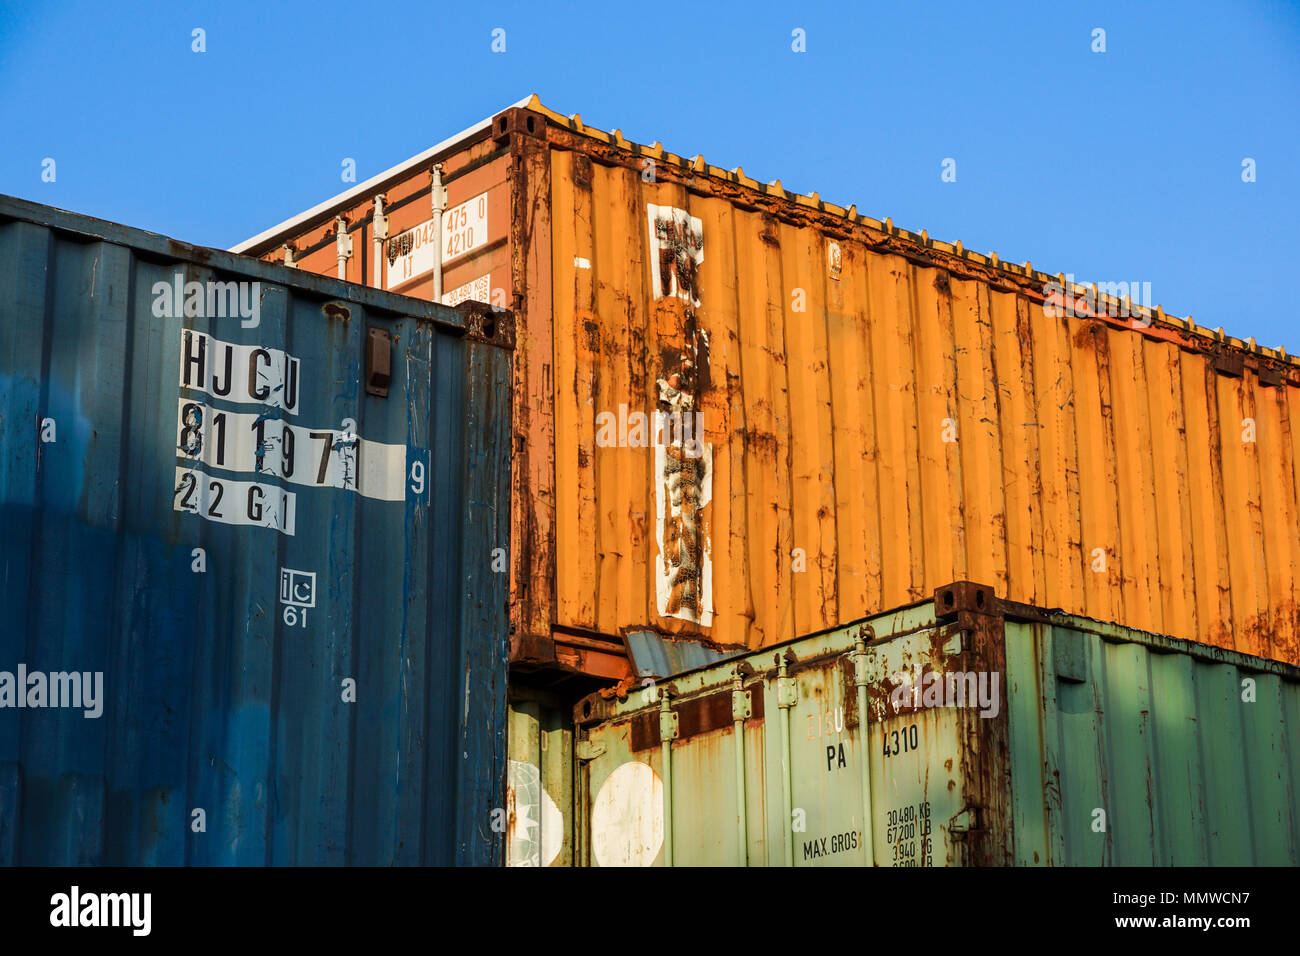 Mailand, Italien - März 19, 2018: Cargo Container im Hafen gestapelt. Container Hafen oder Terminal. Fracht-, Versand, Lieferung, Logistik, Merchandise. Lagerung, Lager, Handel, Zoll. Stockfoto